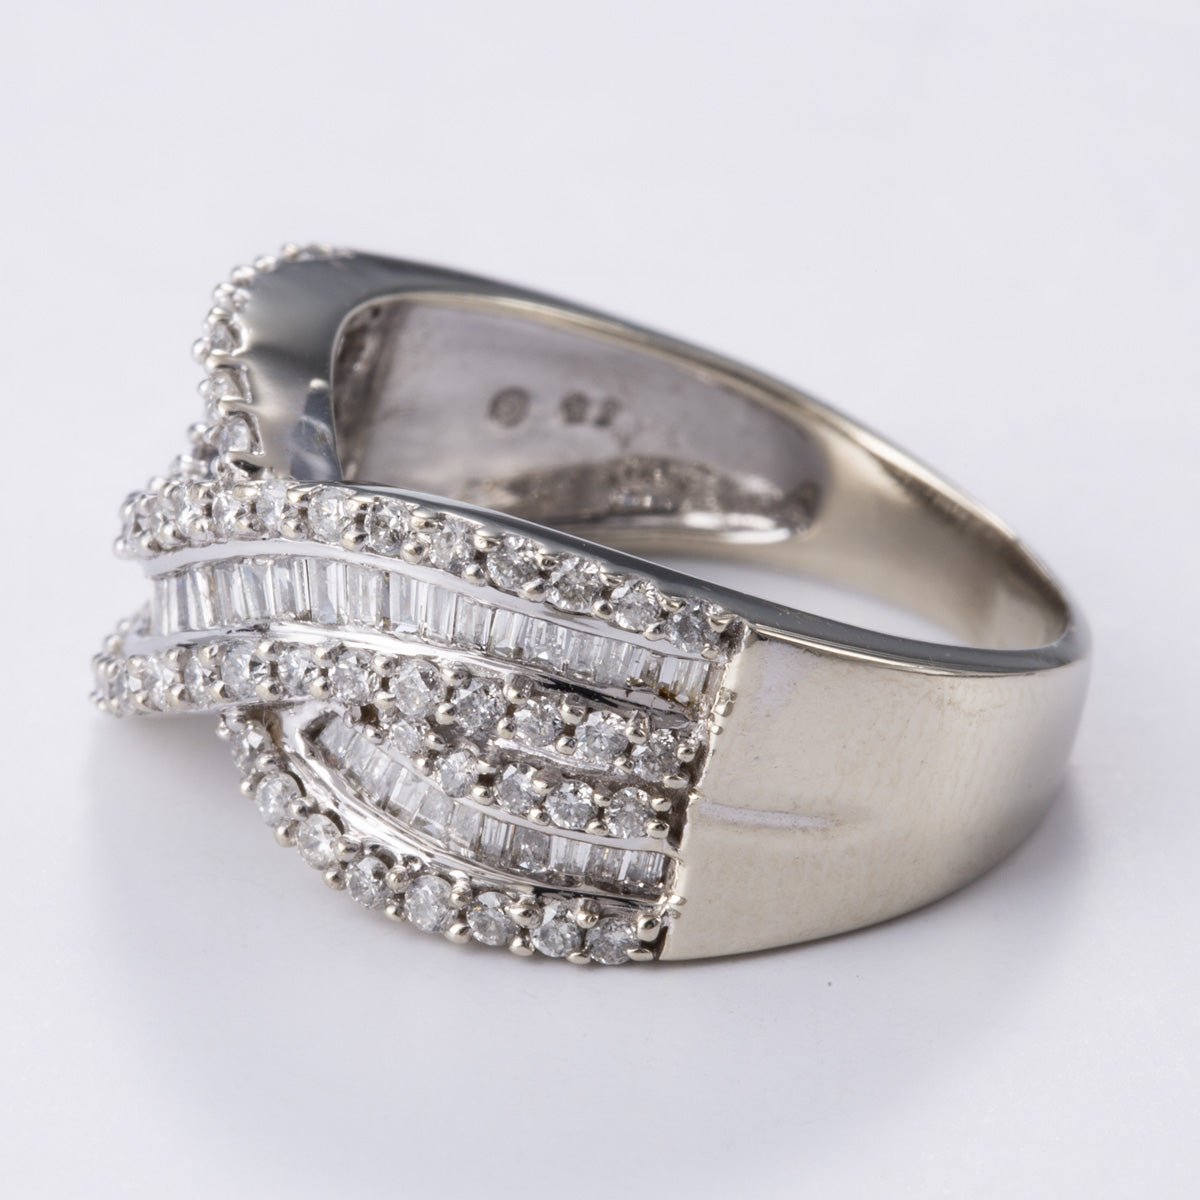 10k White Gold Diamond Ring | 1.00ctw | Sz 7.75 - 100 Ways